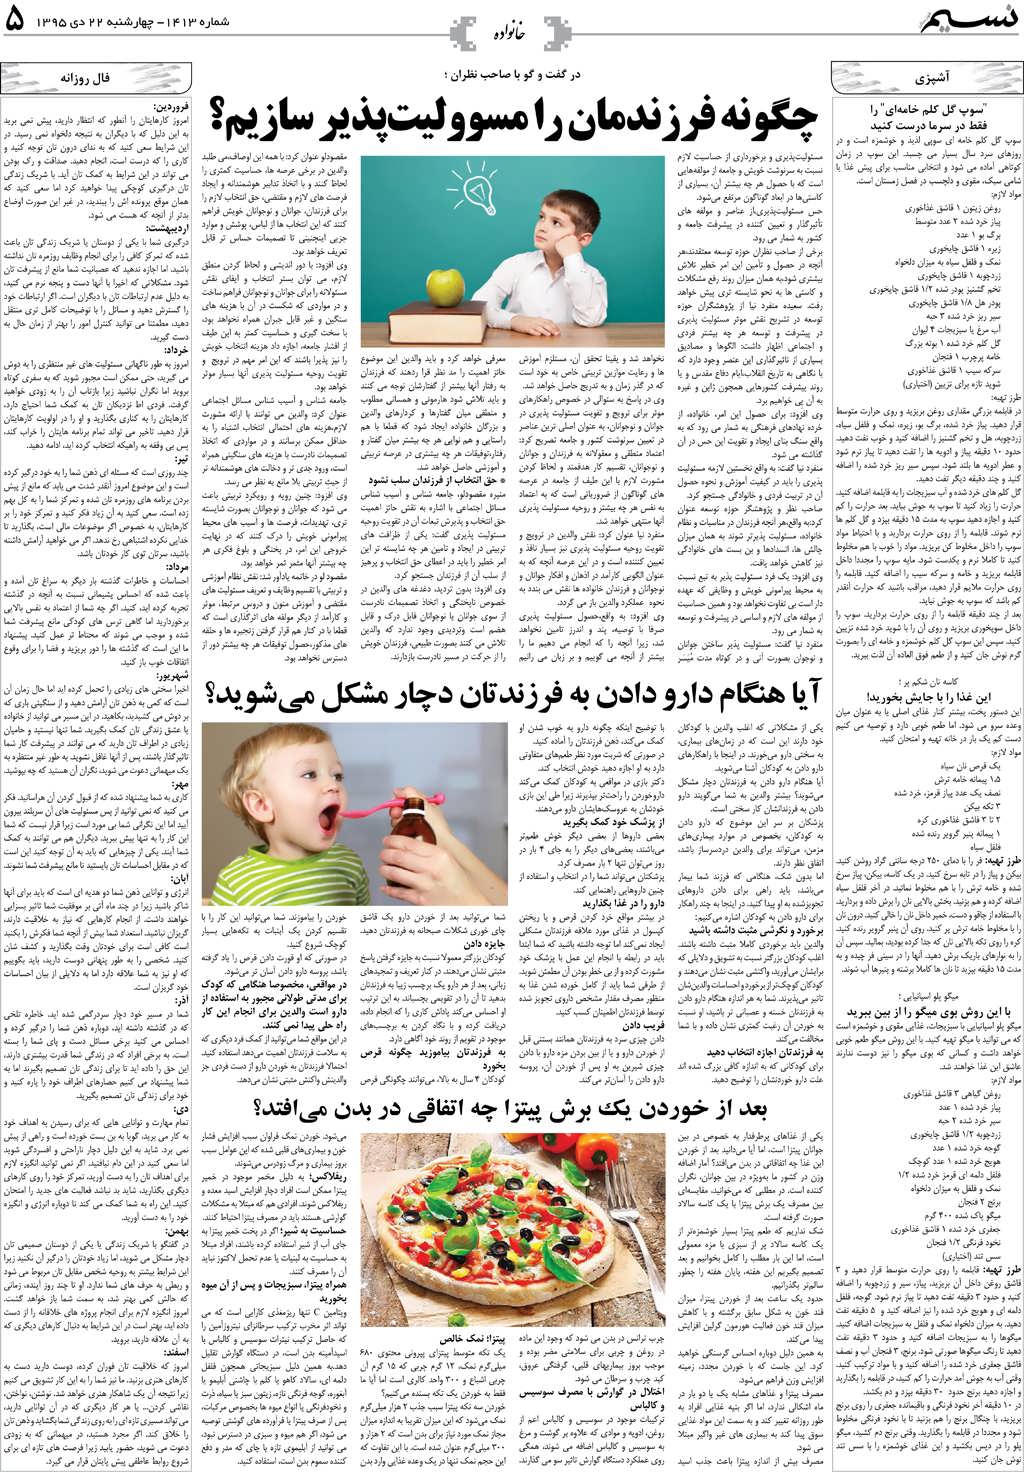 صفحه خانواده روزنامه نسیم شماره 1413